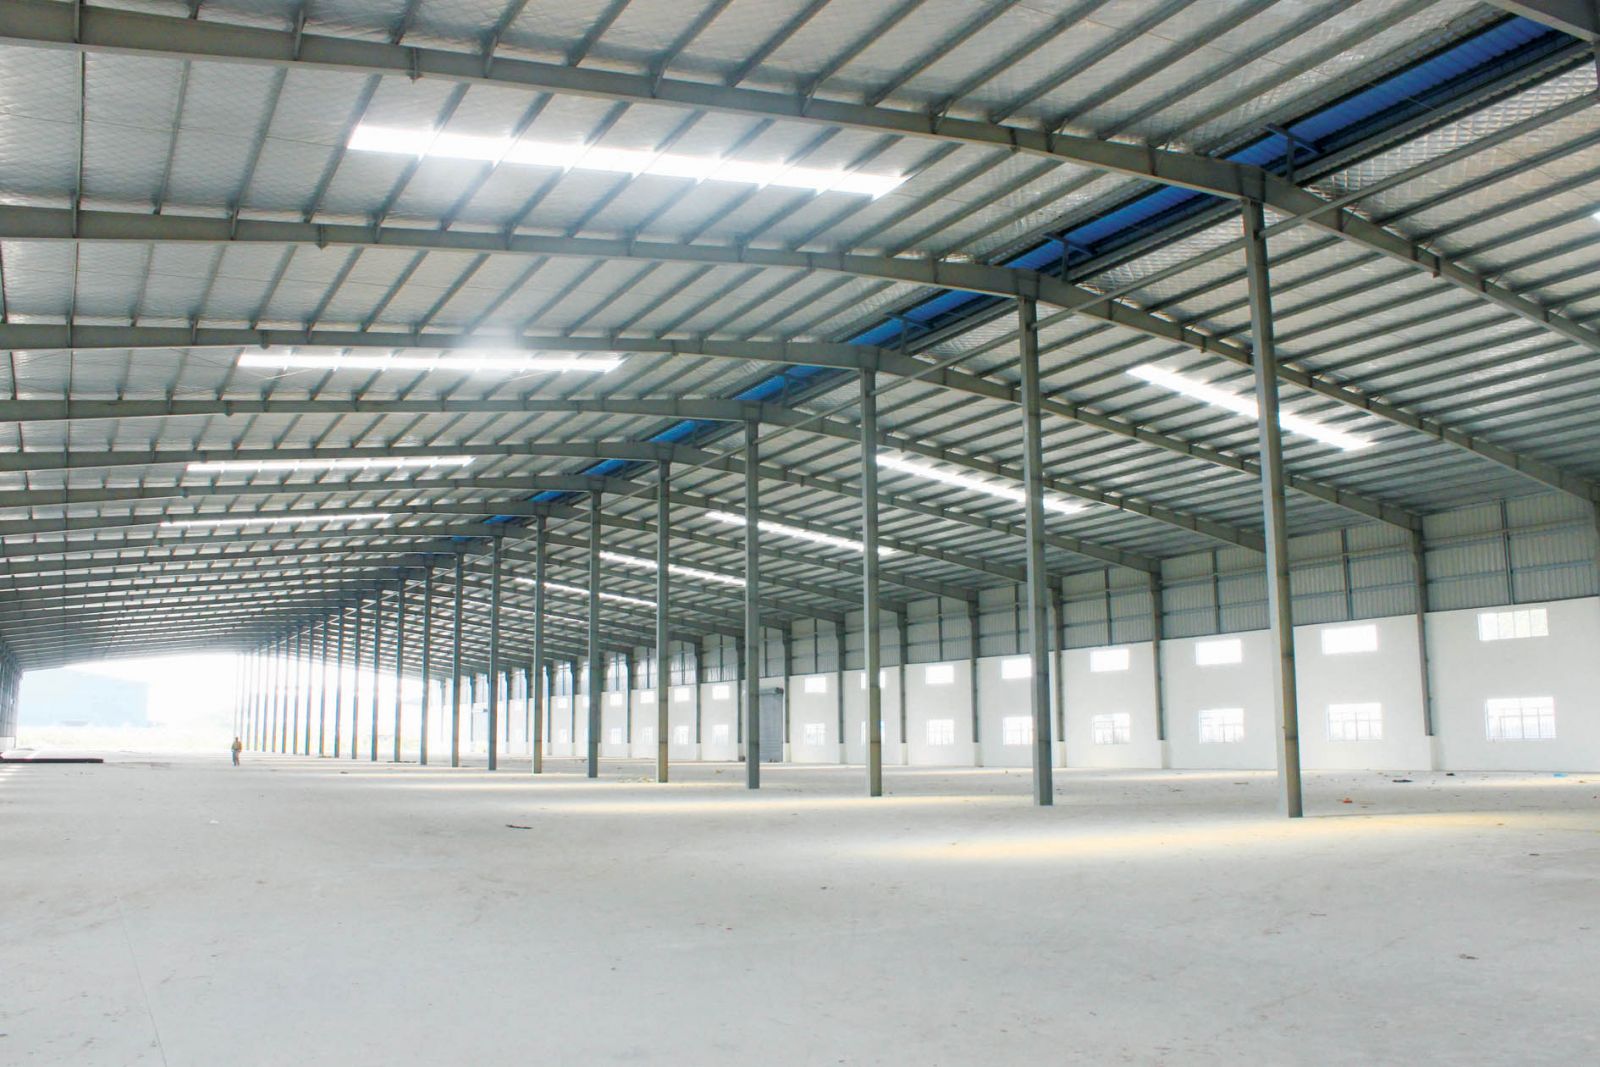 Mua tôn lợp mái cho nhà xưởng tại Mỹ Việt để đảm bảo tôn lợp có chất lượng tốt nhất